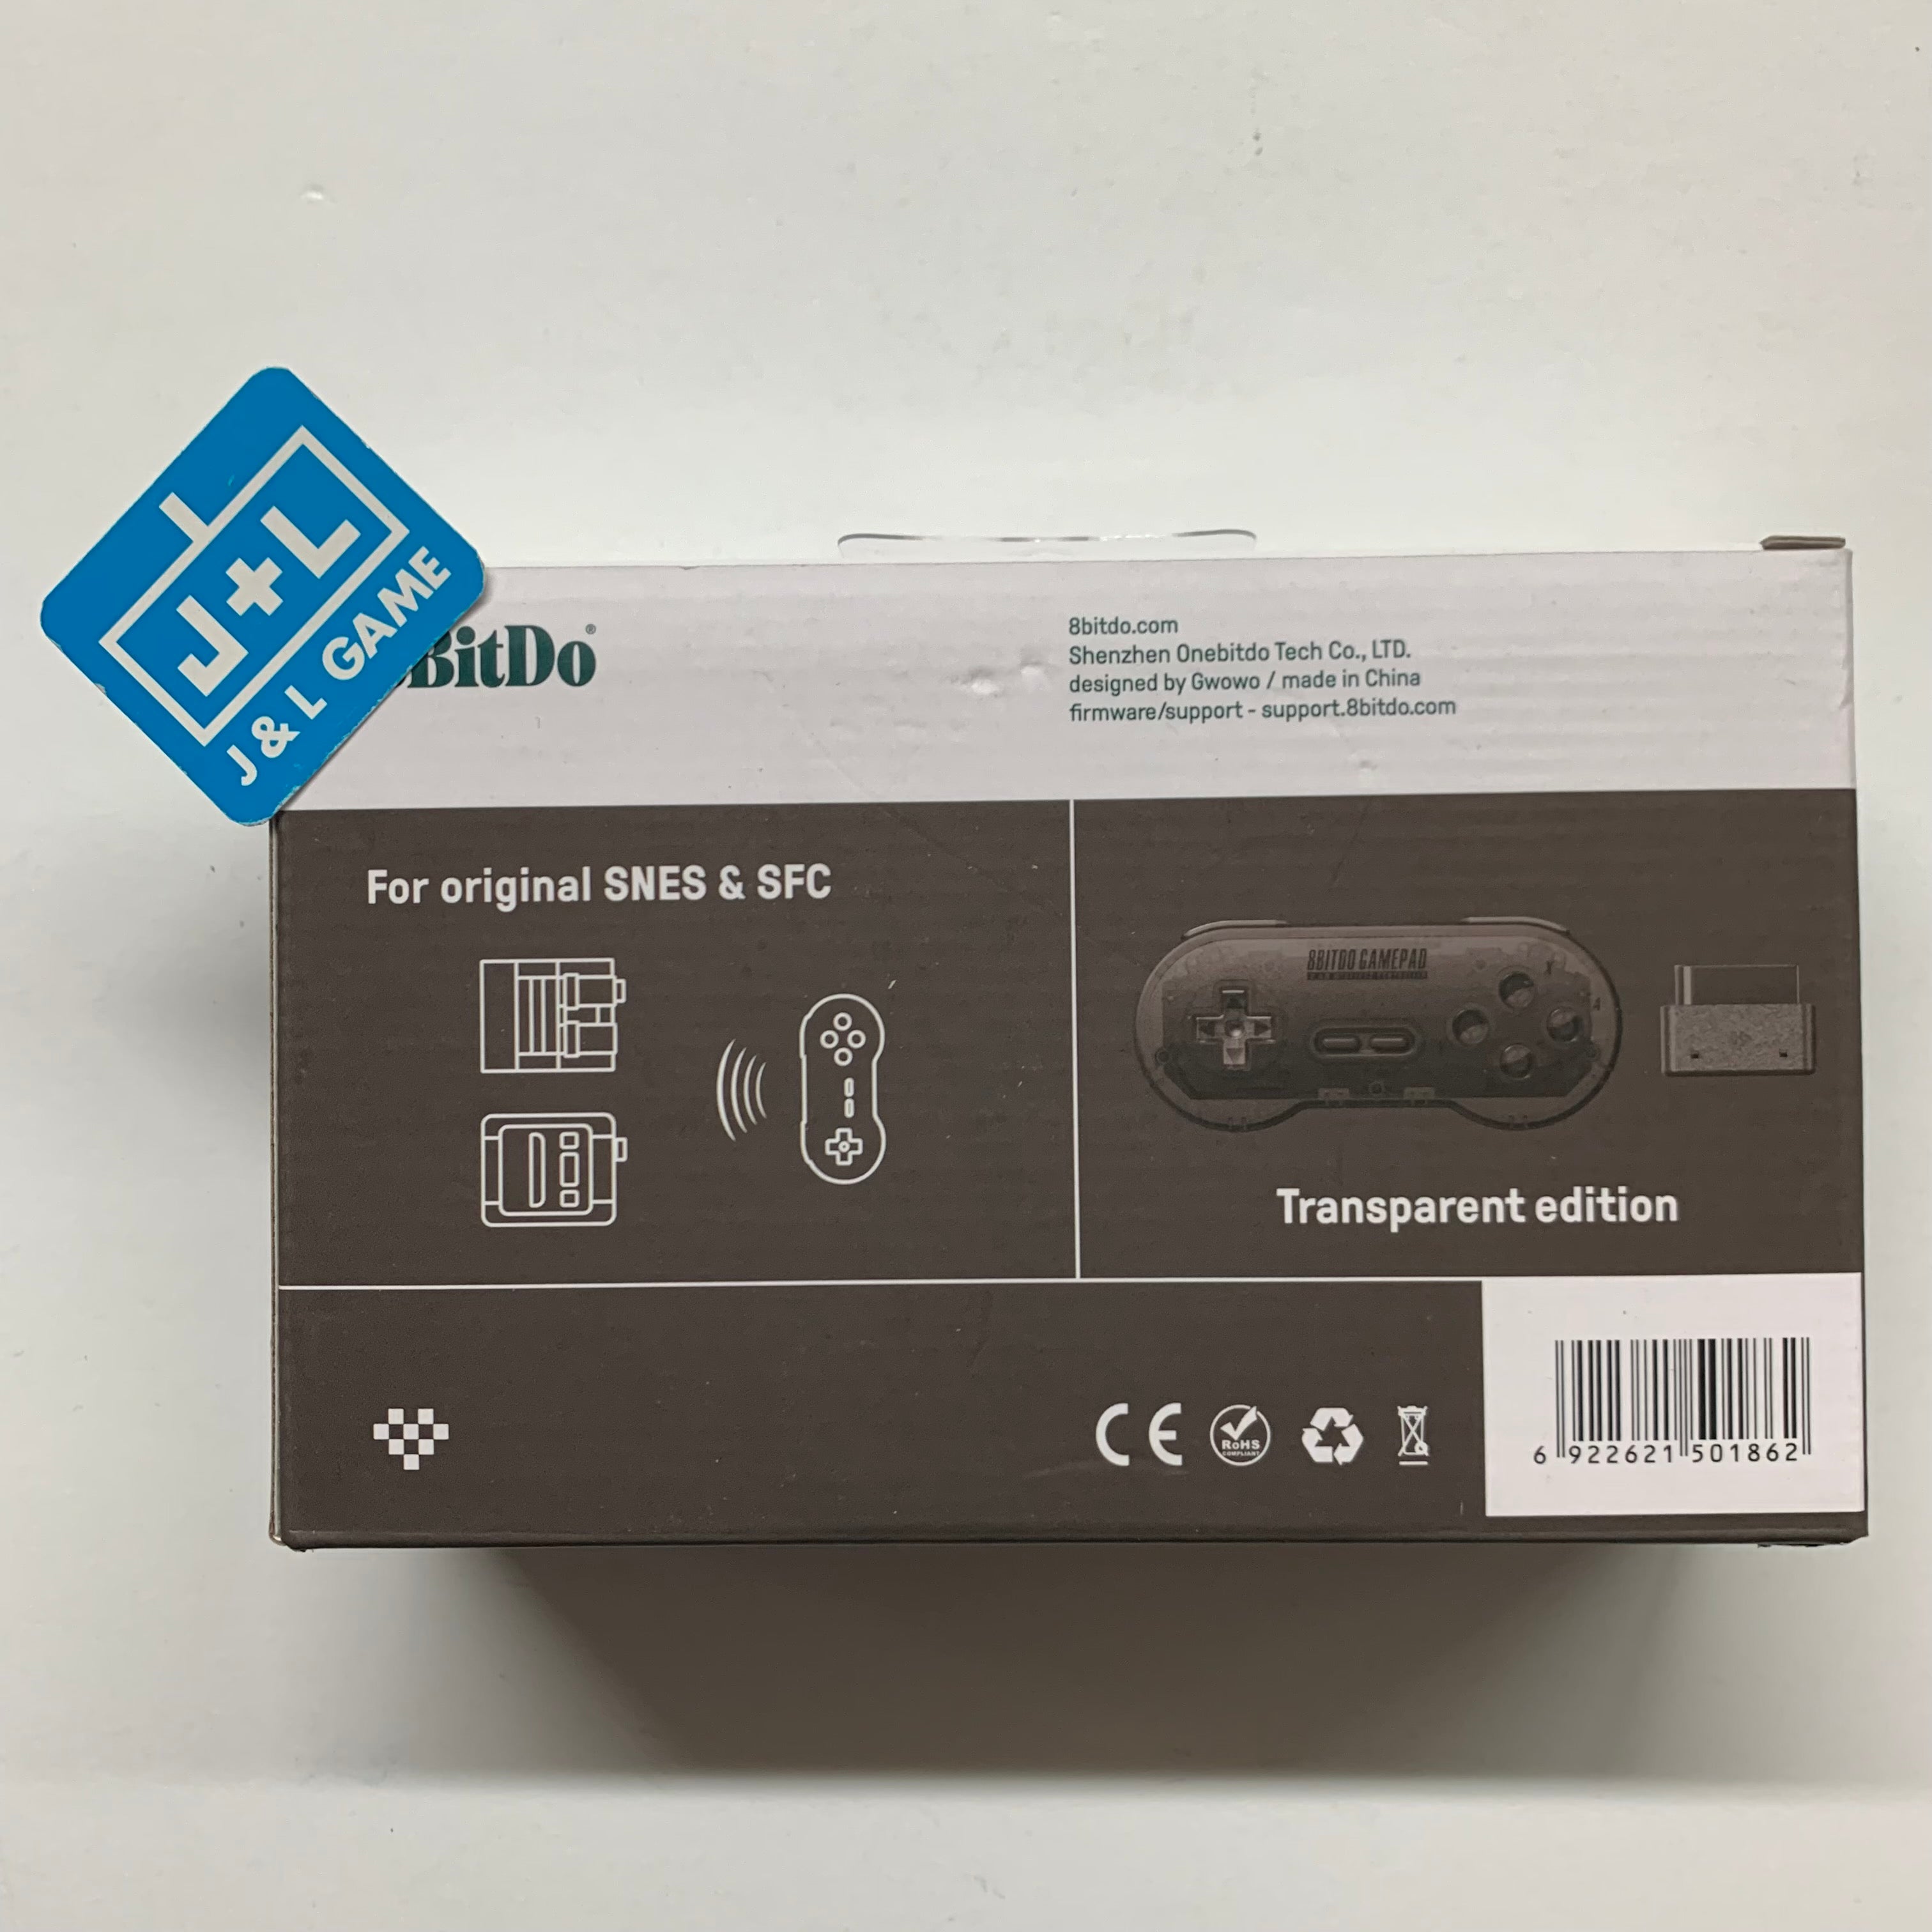 8Bitdo Sn30 2.4G Wireless Gamepad for Original SNES/SFC (Transparent Edition) - (SNES) Super Nintendo Accessories 8Bitdo   